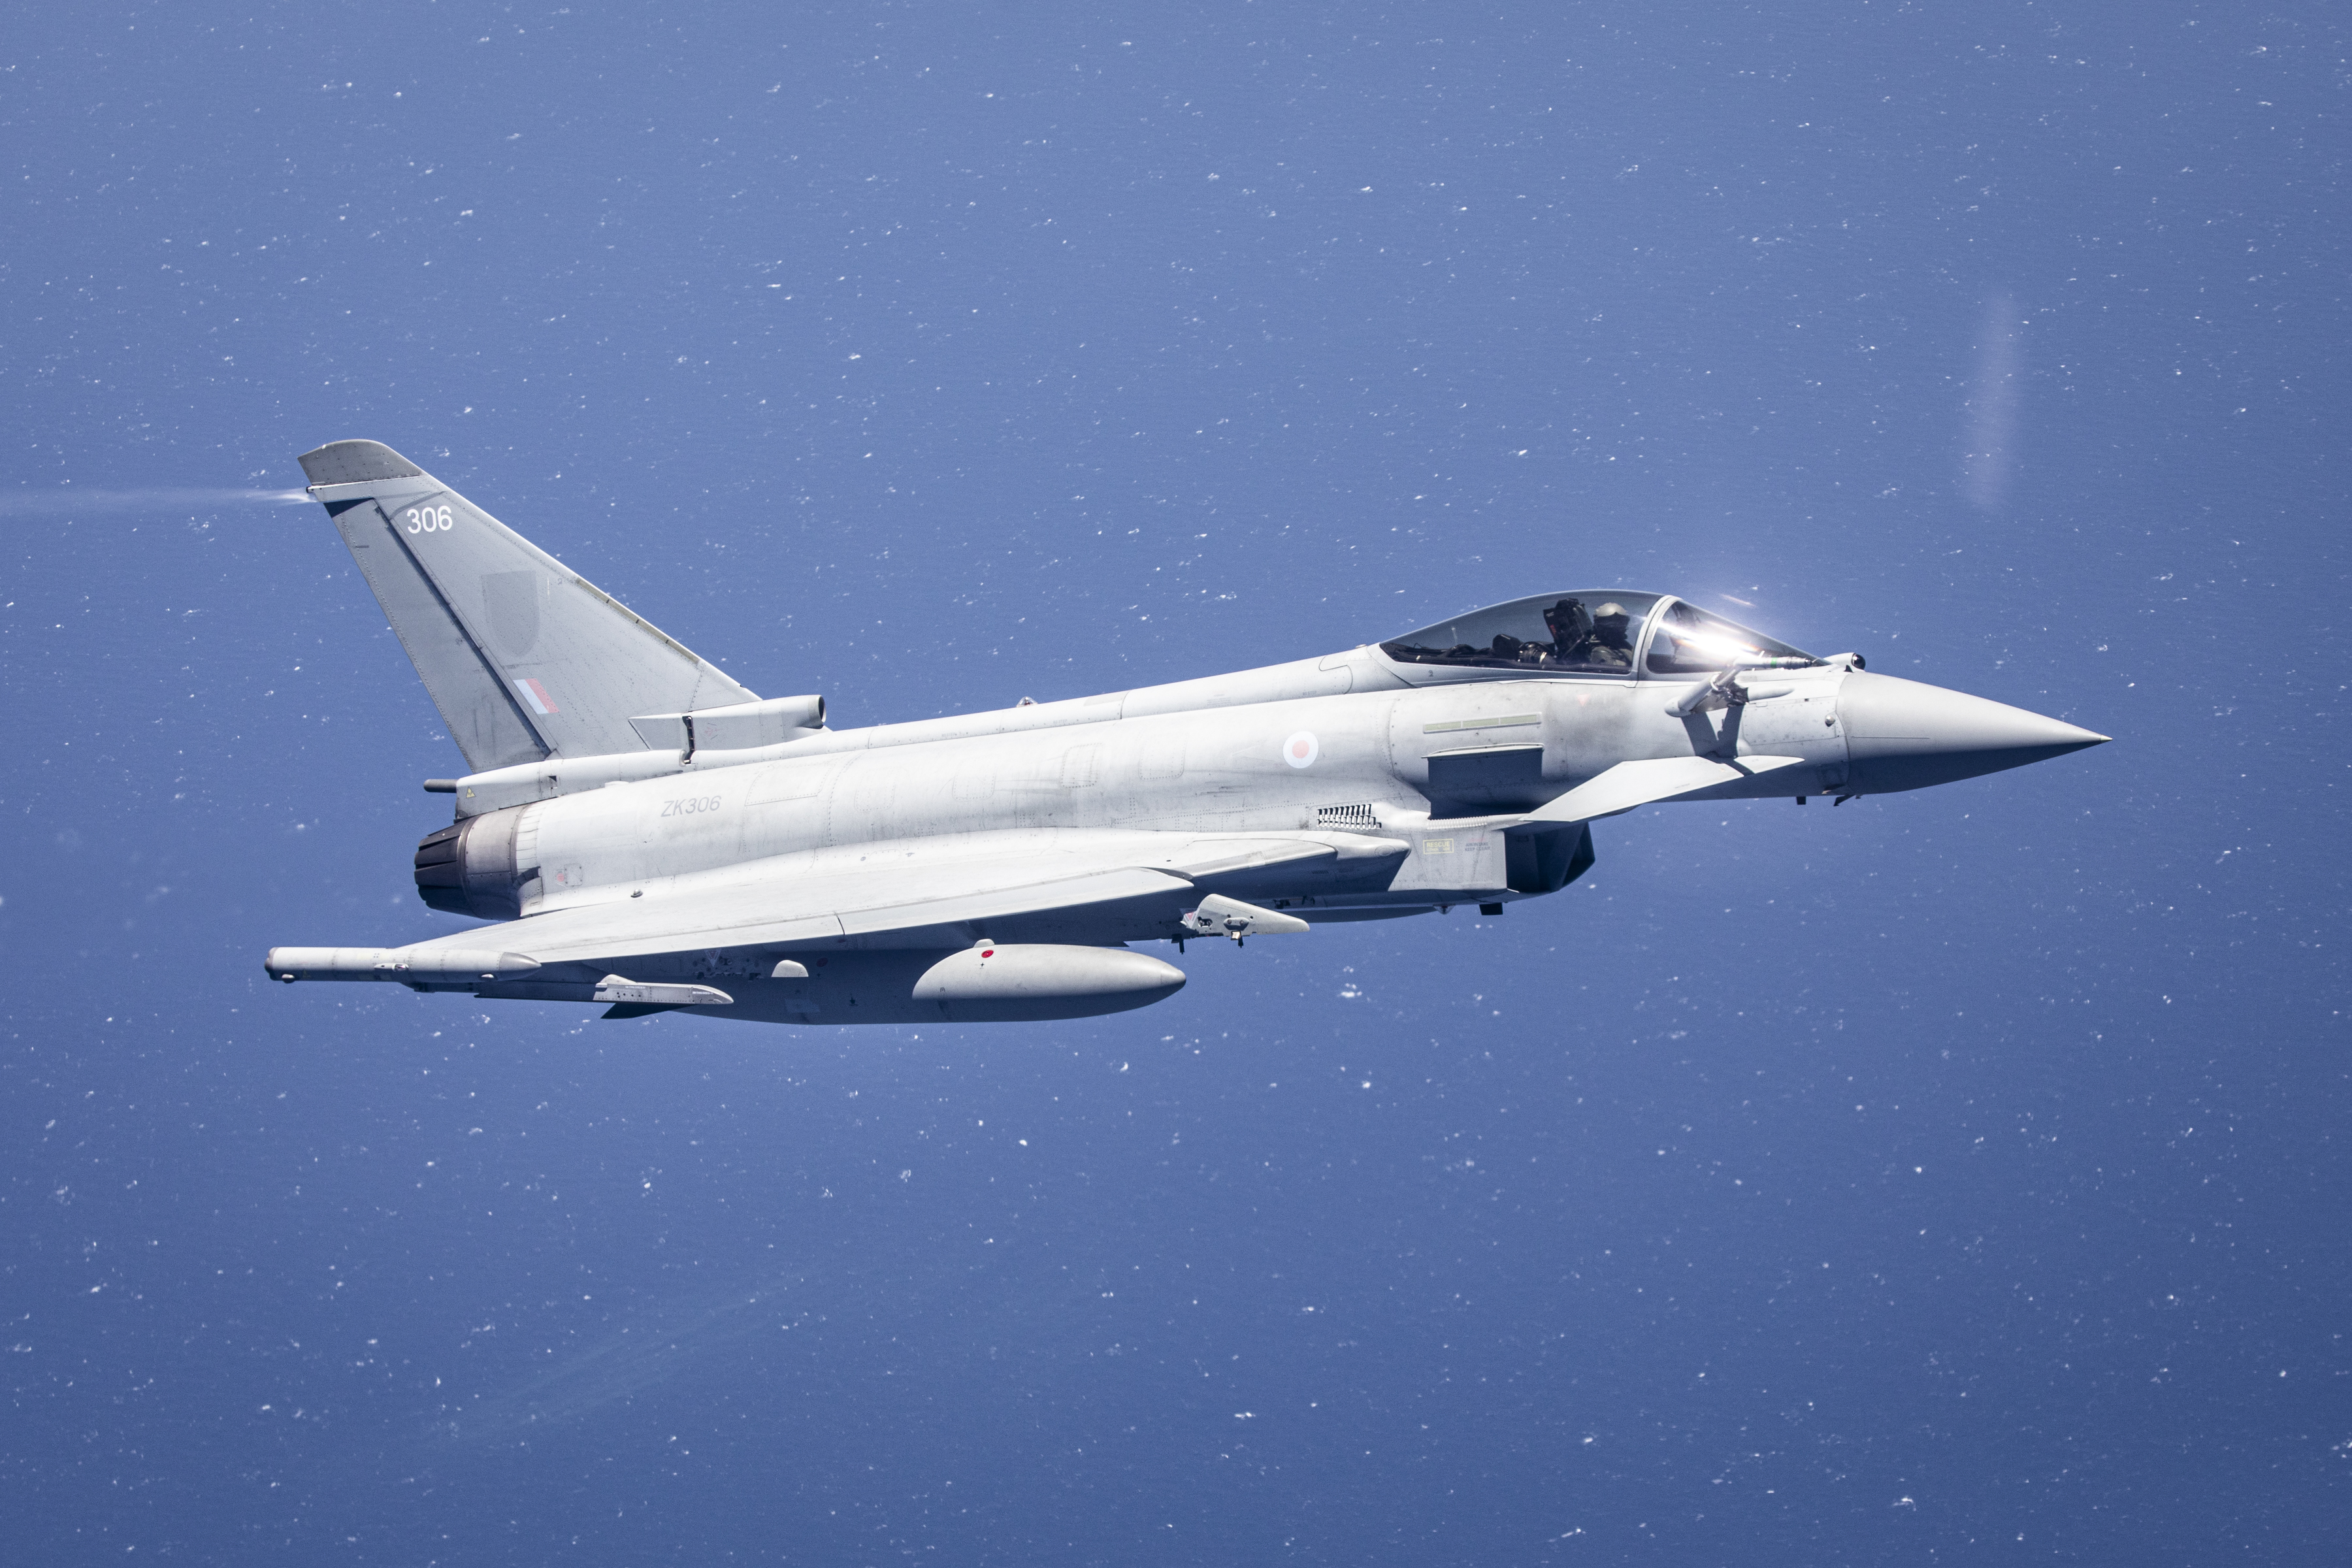 Typhoon in flight.